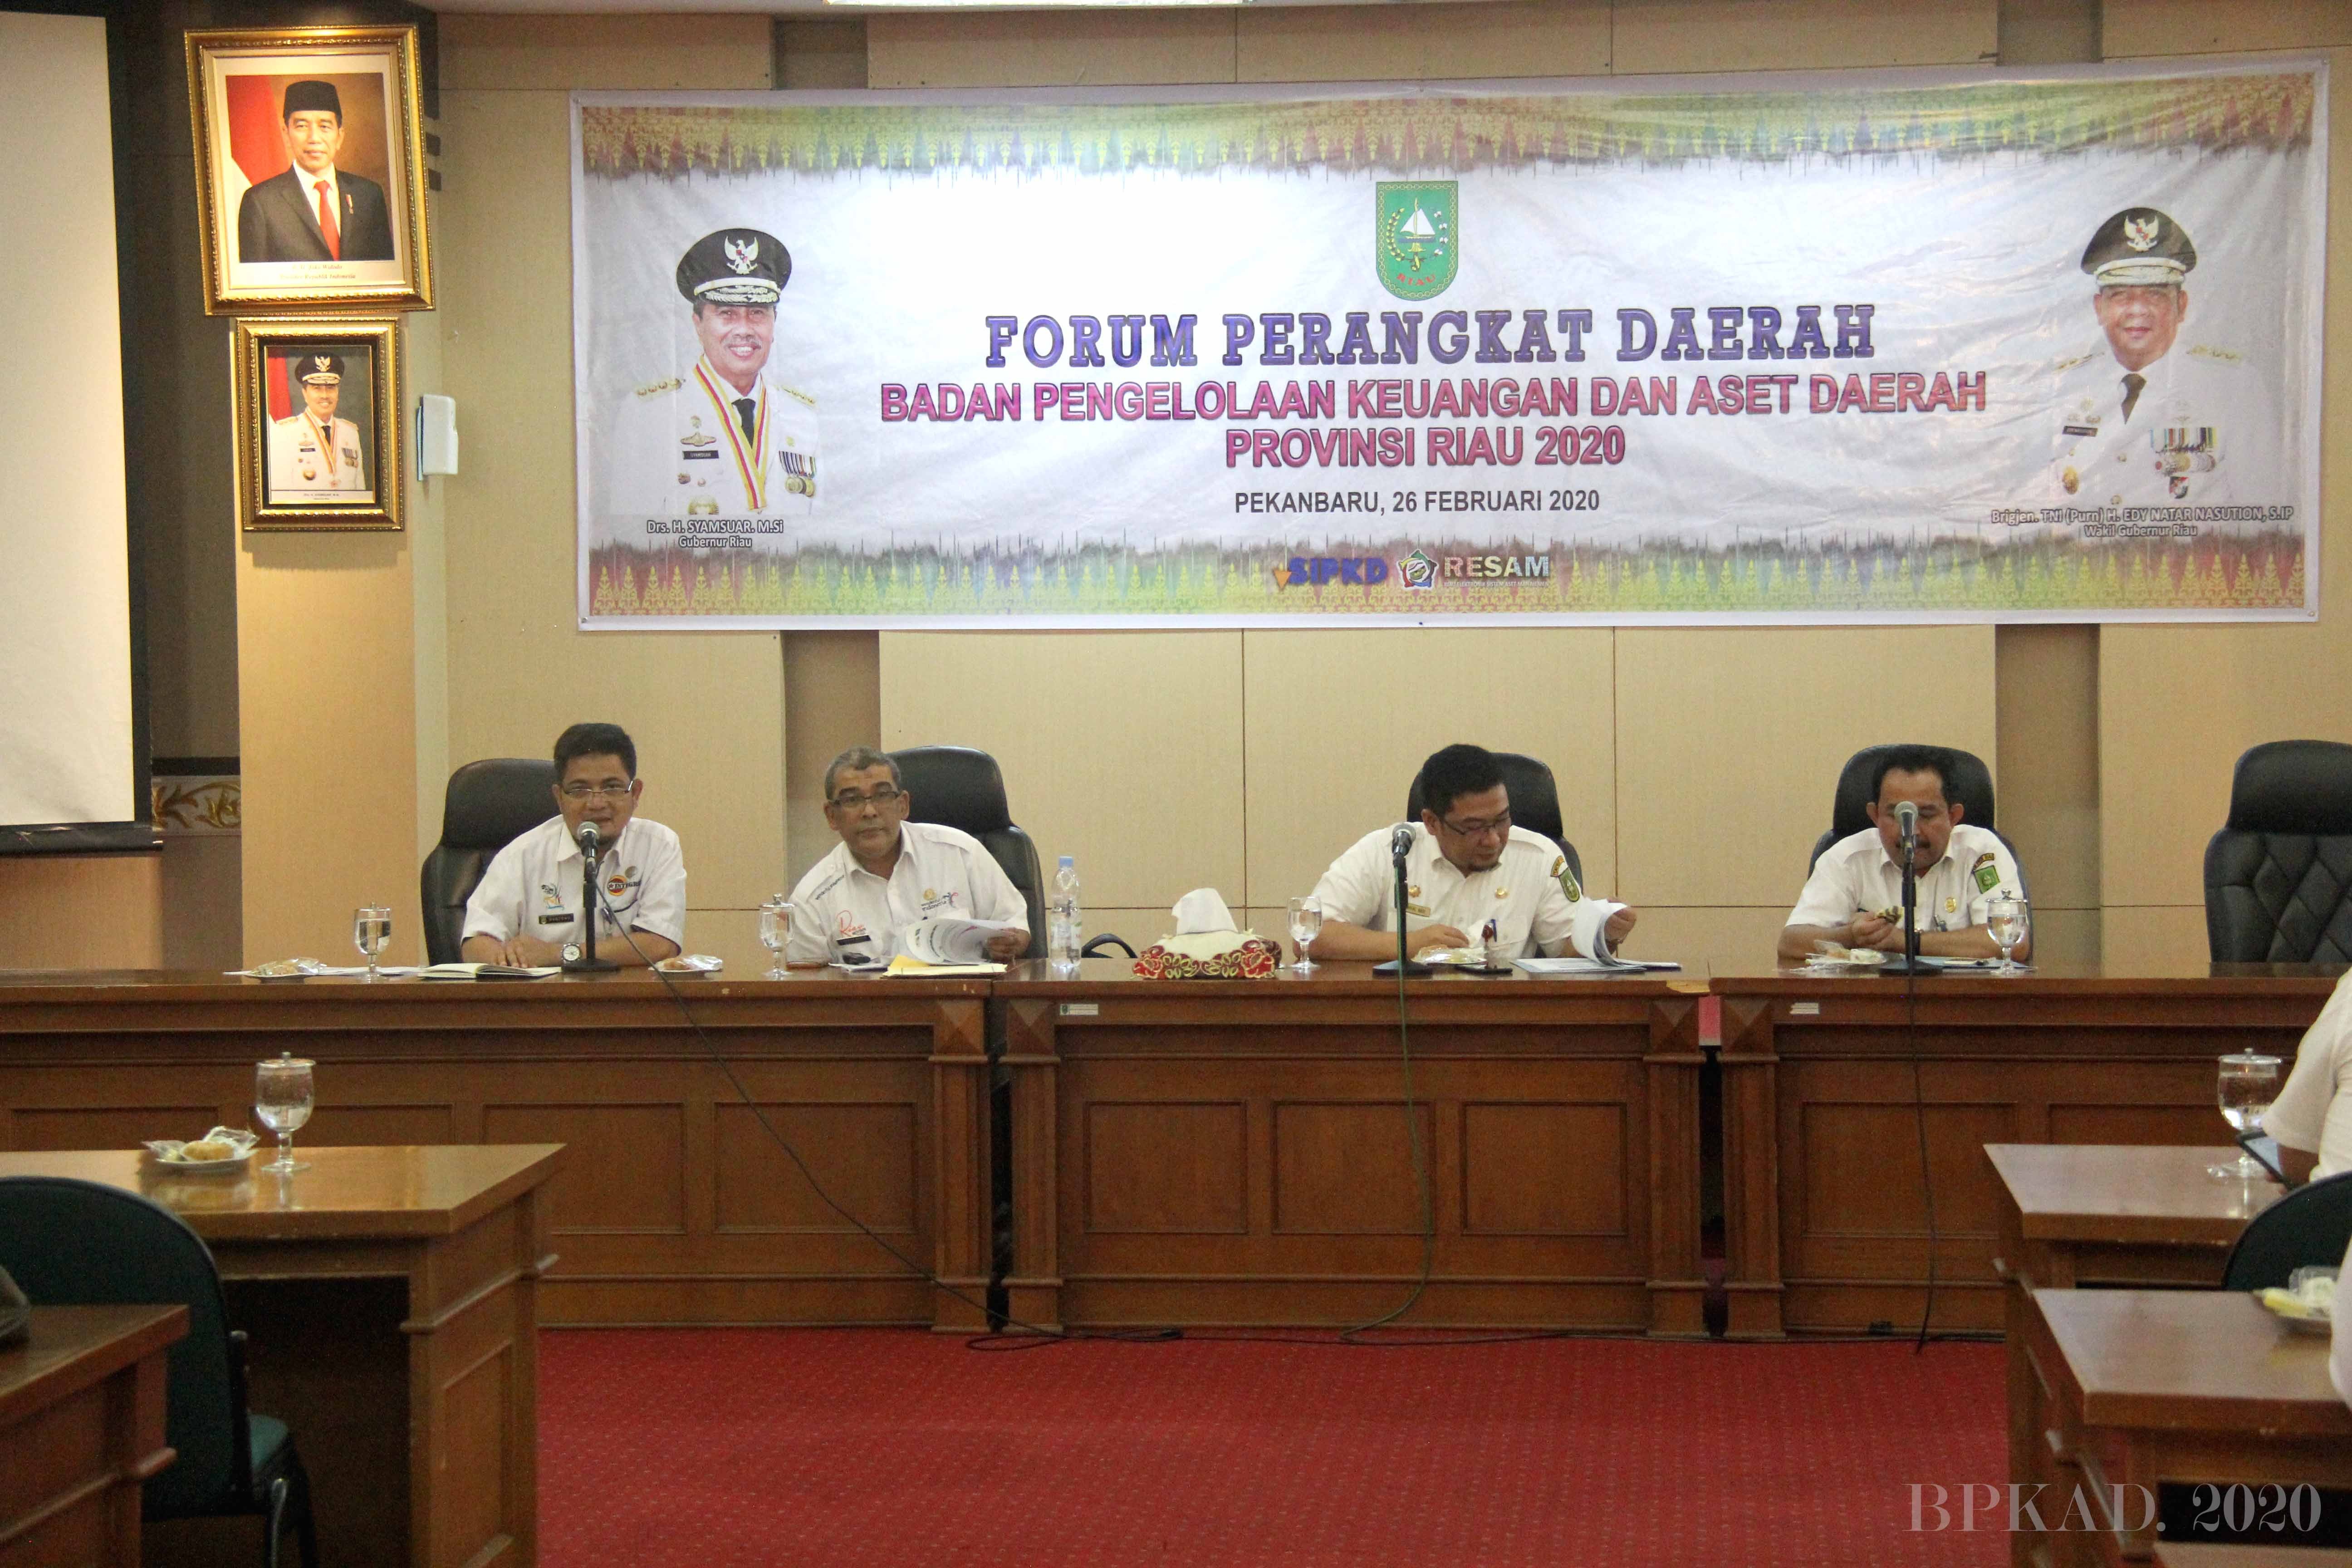 Forum Perangkat Daerah BPKAD Provinsi Riau Kali Ini Lebih Hangat